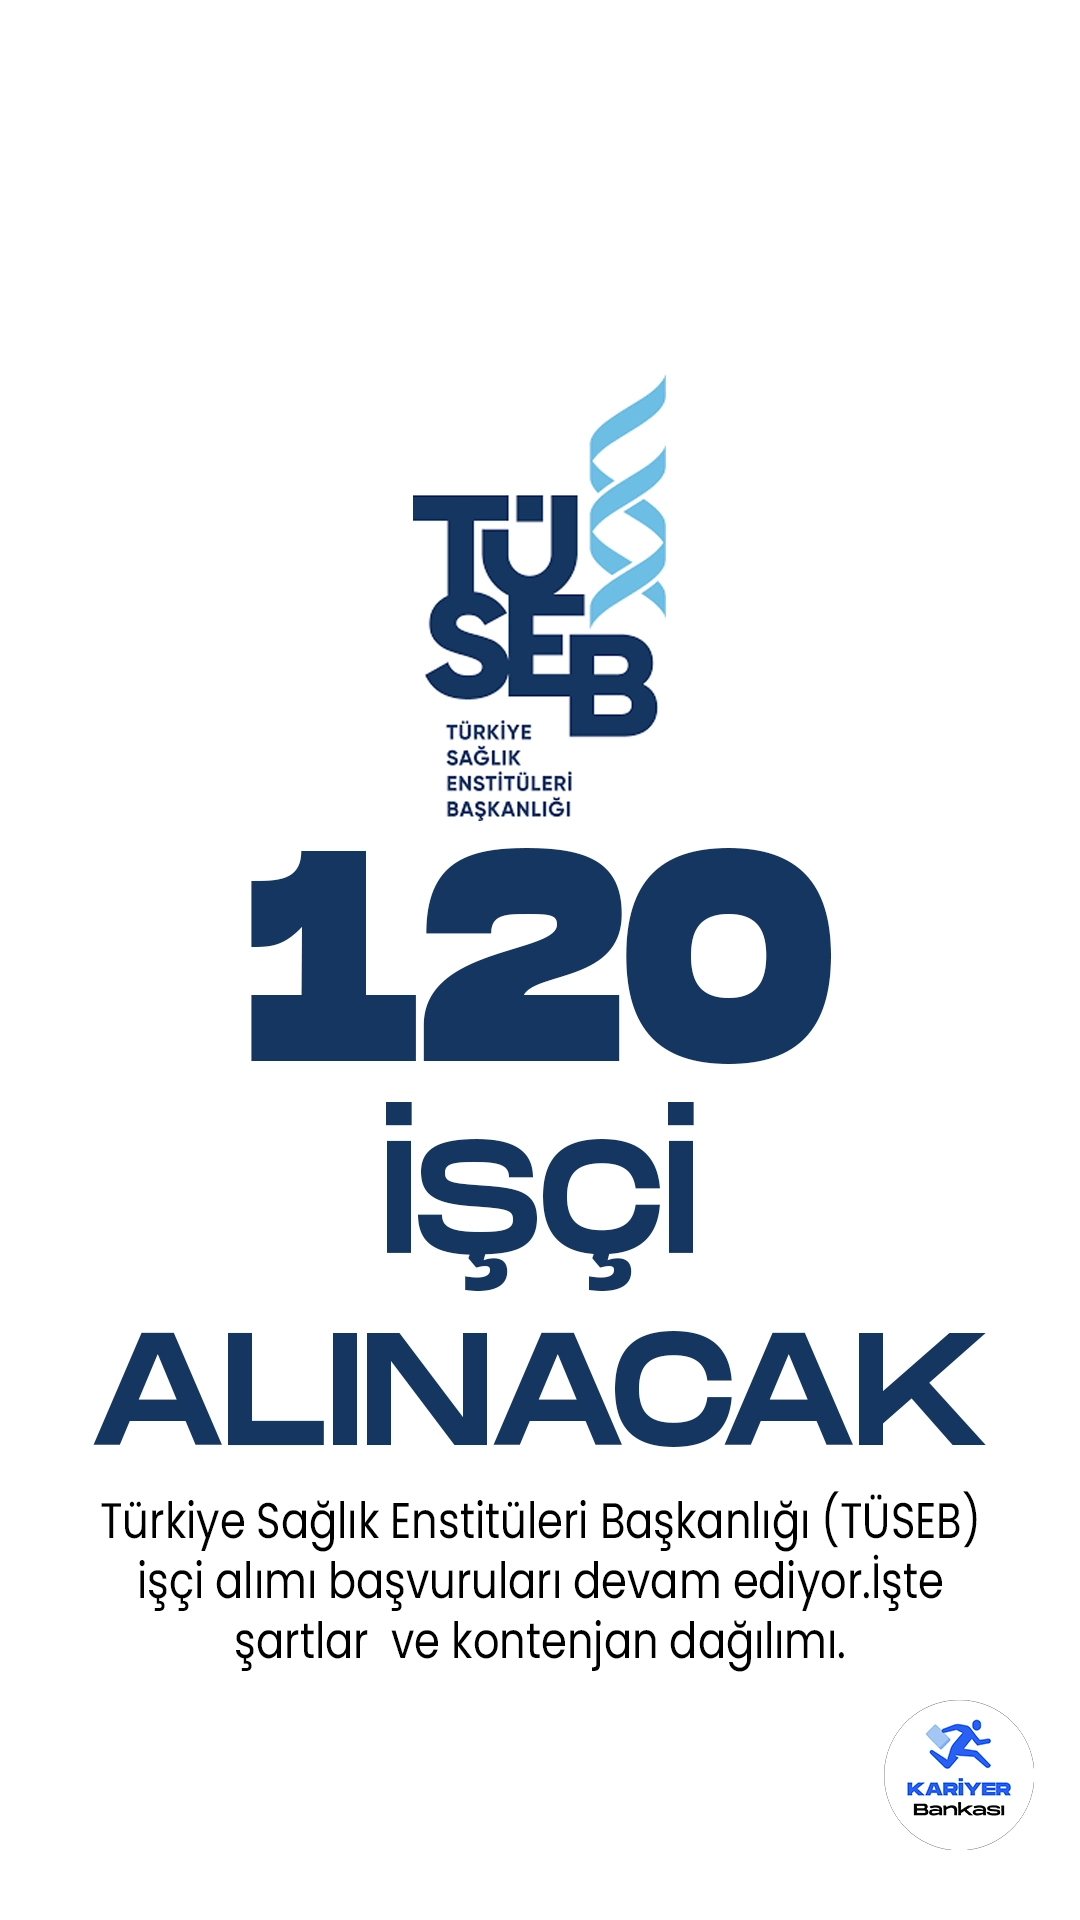 Türkiye Sağlık Enstitüleri Başkanlığı (TÜSEB) işçi alımı başvuruları devam ediyor. İlgili alım duyurusunda, Türkiye Sağlık Enstitüleri Başkanlığına biyolog, mütercim-tercüman, avukat, istatistikçi, kimyager, programcı, şoför, tekniker, mühendis, V.H.K.İ. unvanlarında 120 kadrolu işçi alımı yapılacağı kaydedildi. Başvuruların 16 Haziran 2023 tarihine kadar alınacağı aktarılırken, başvuru yapacak adayların genel ve özel şartları taşıması gerektiği belirtildi.